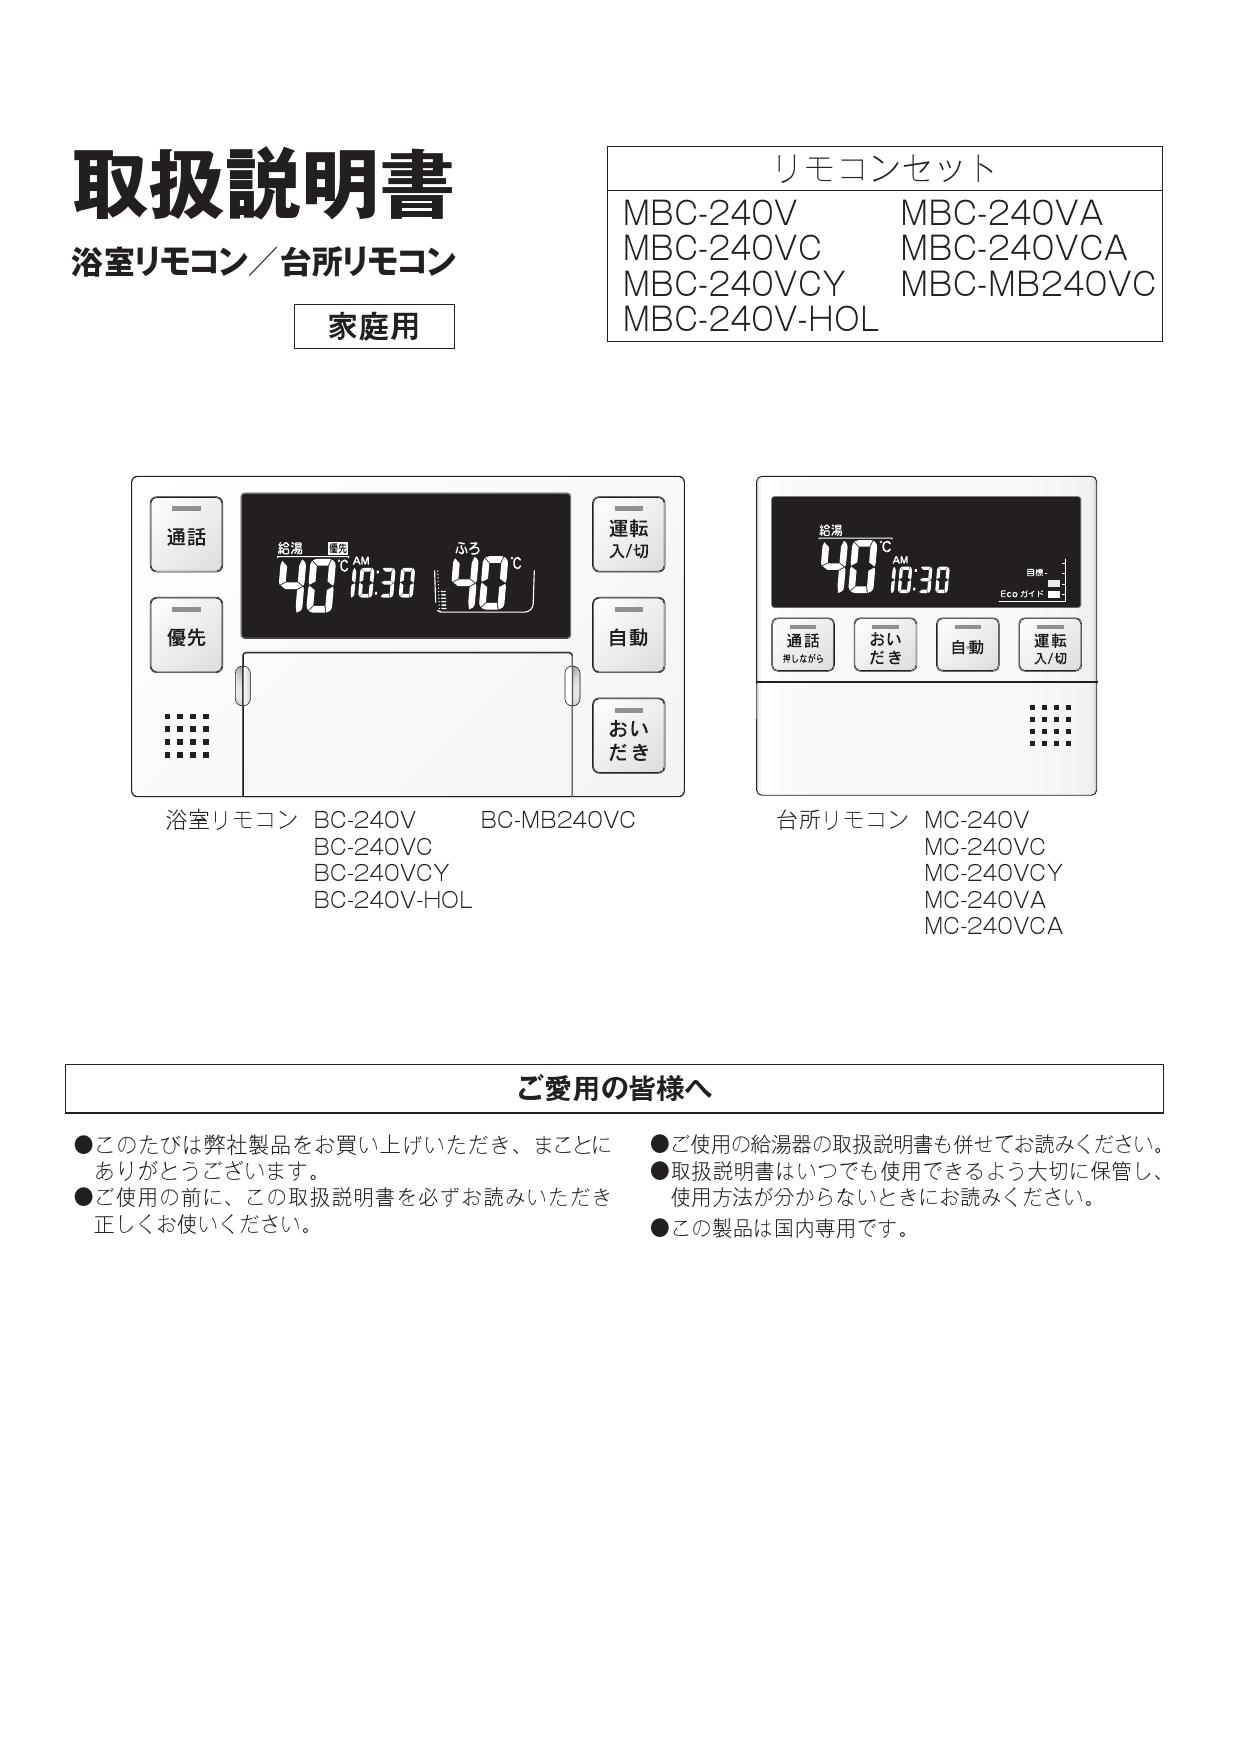 全品送料0円 リンナイ MBC-240V-HOL 給湯器リモコン マルチリモコン 浴室 台所リモコンのセット JK 